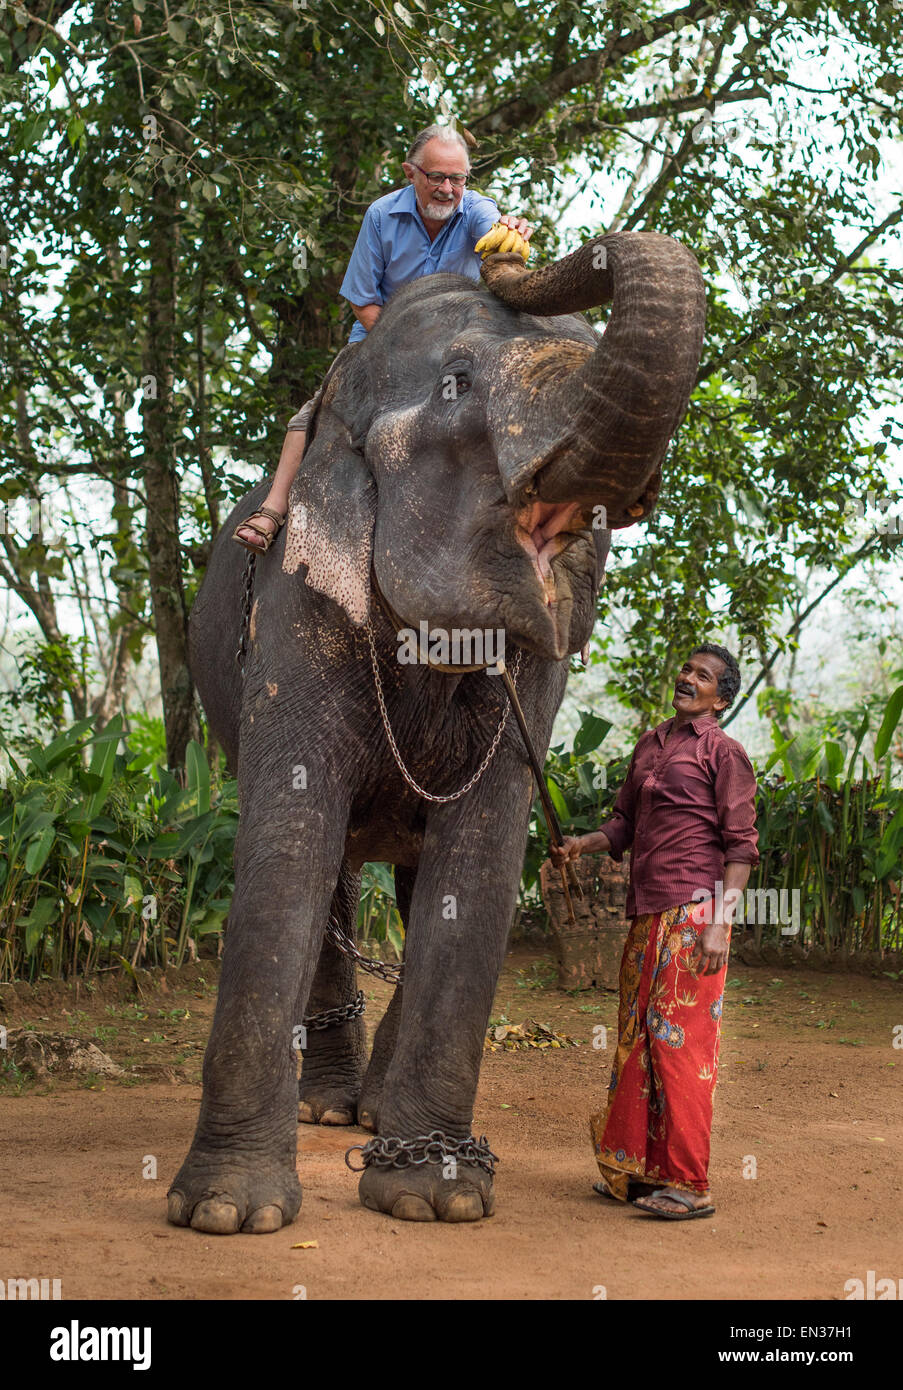 Assis sur un éléphant touristiques il est l'alimentation, guidé par un éléphant mahout ou guide, Peermade, Kerala, Inde Banque D'Images